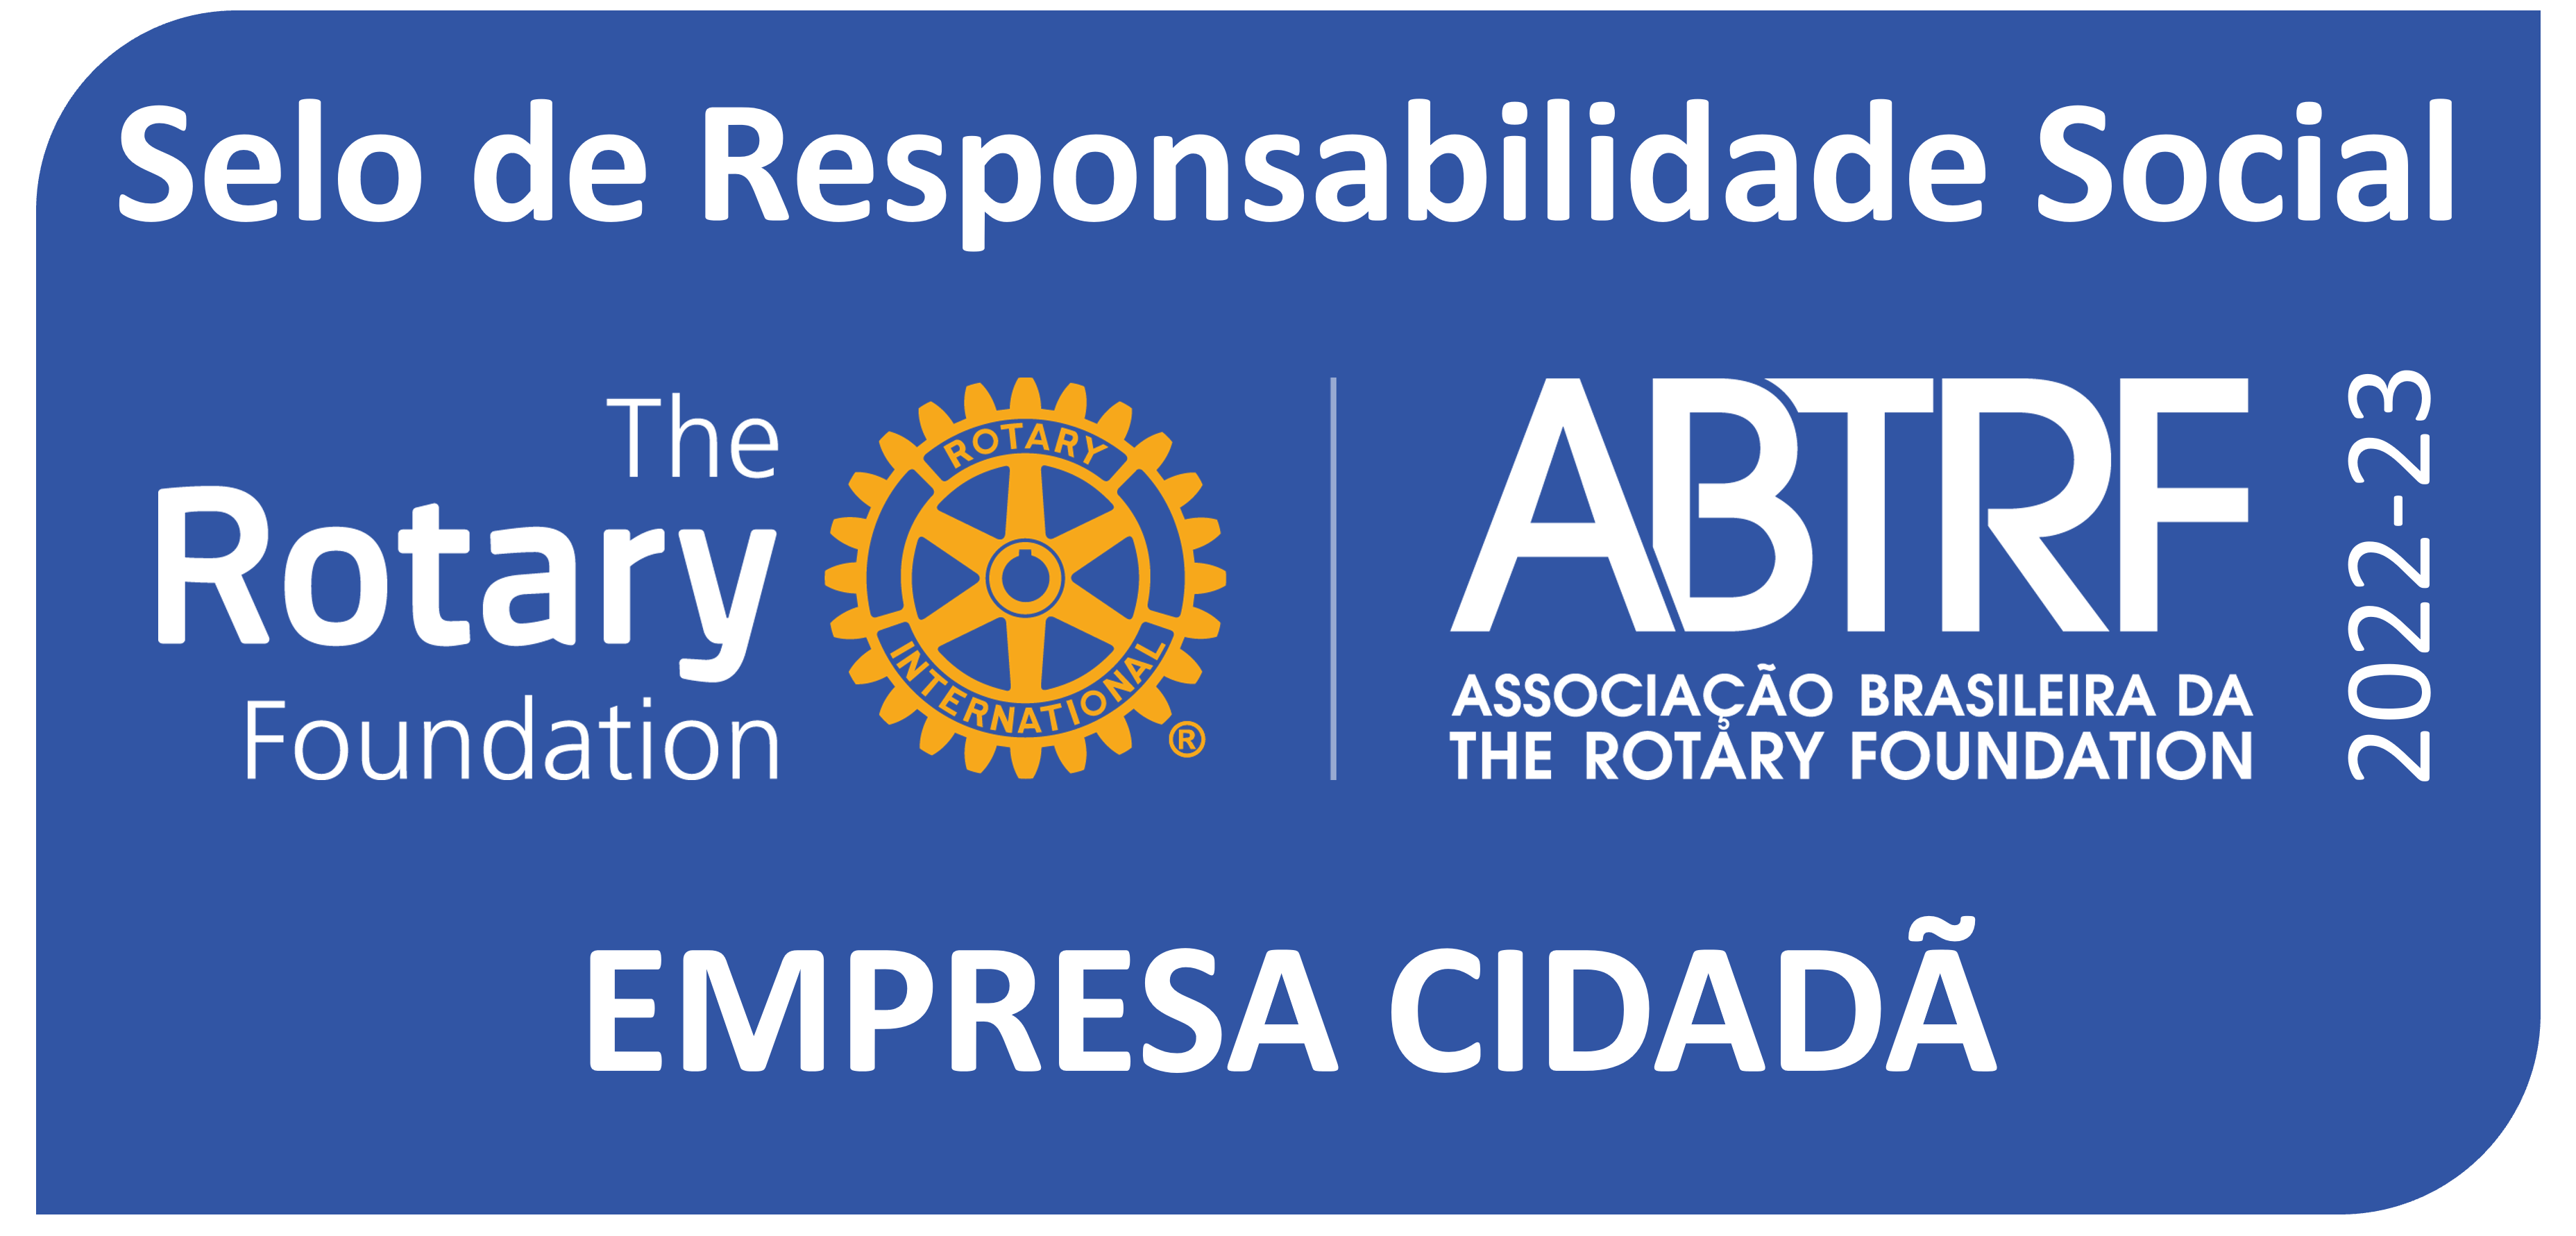 Selo de Responsabilidade Social, EMPRESA CIDADÃ, The Rotary Foundation, Associação Brasileira da The Rotary Foundation ABTRF 2022-23